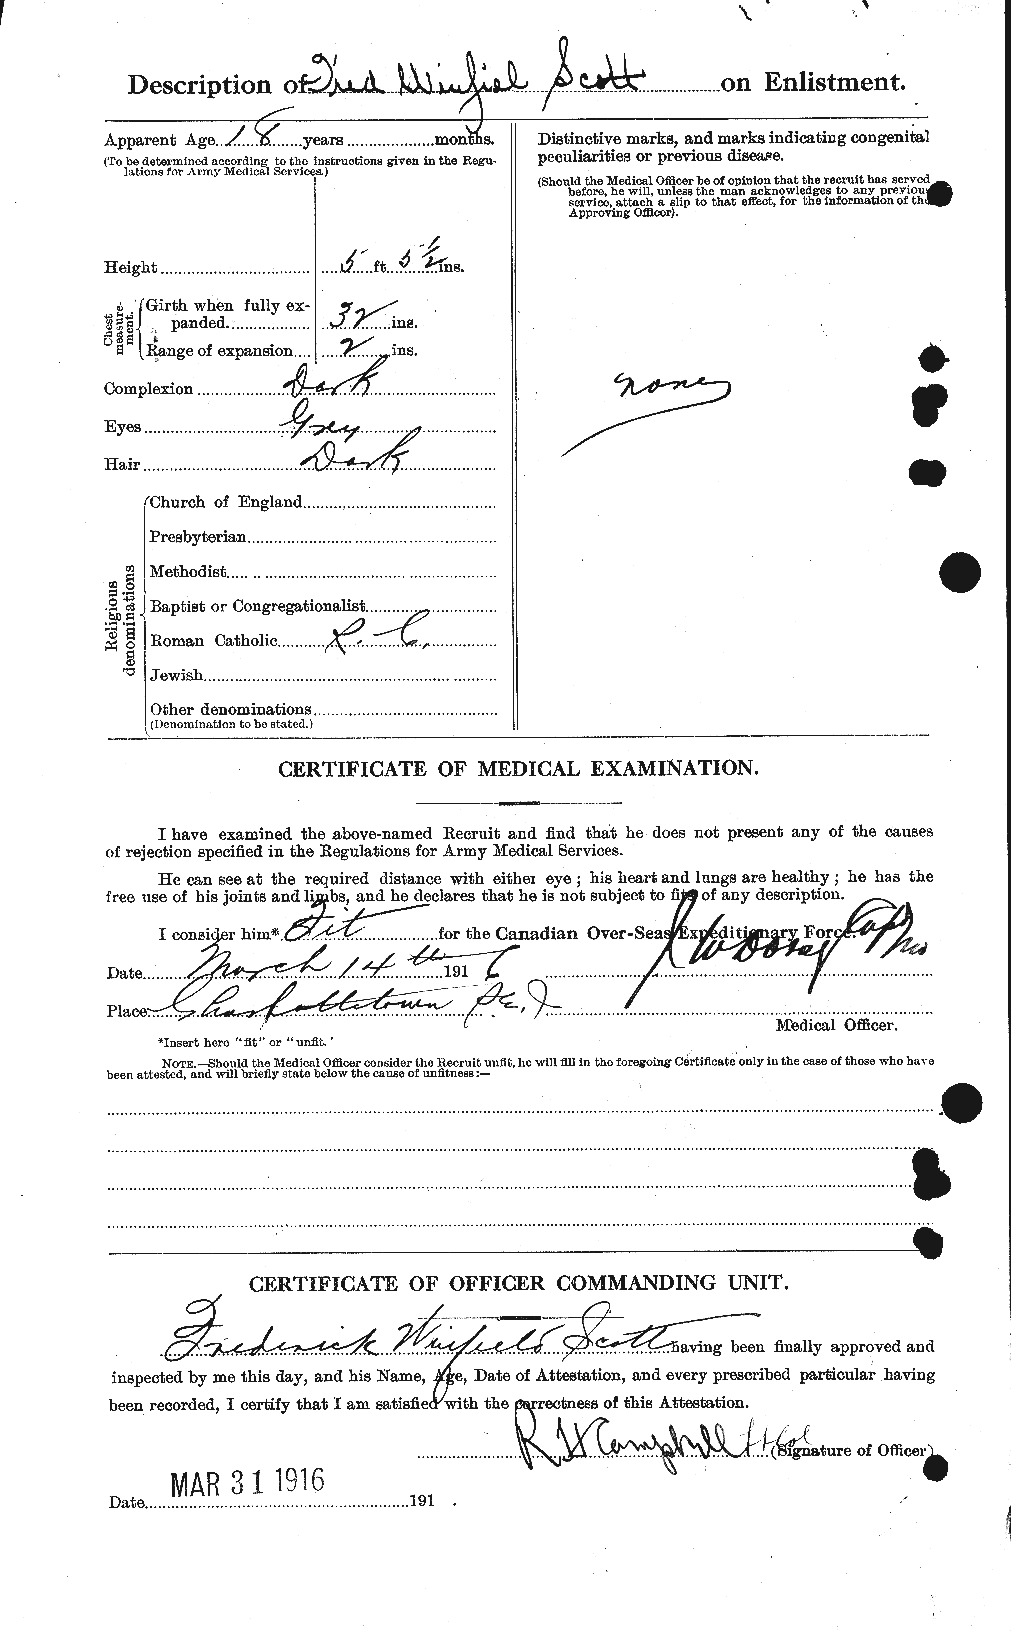 Dossiers du Personnel de la Première Guerre mondiale - CEC 084378b